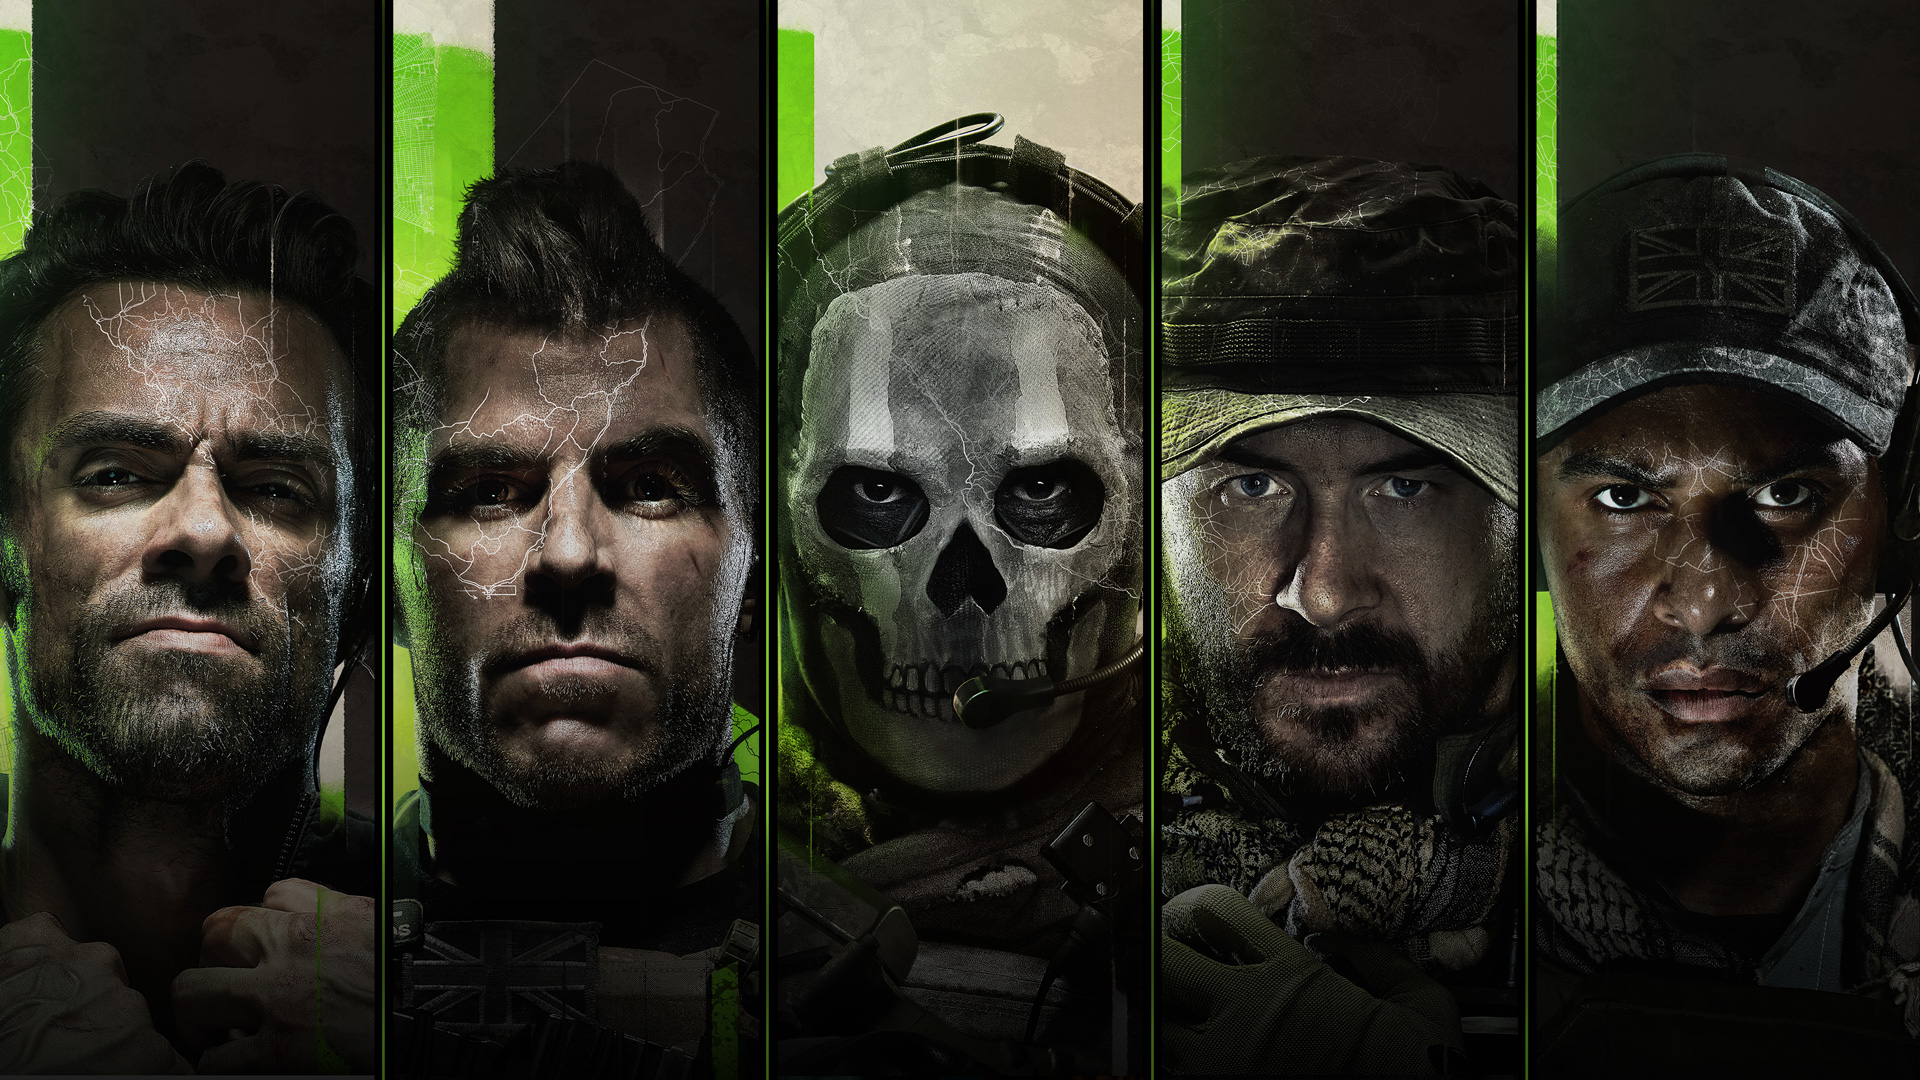 Call of Duty: Modern Warfare 2 STEAM digital for Windows